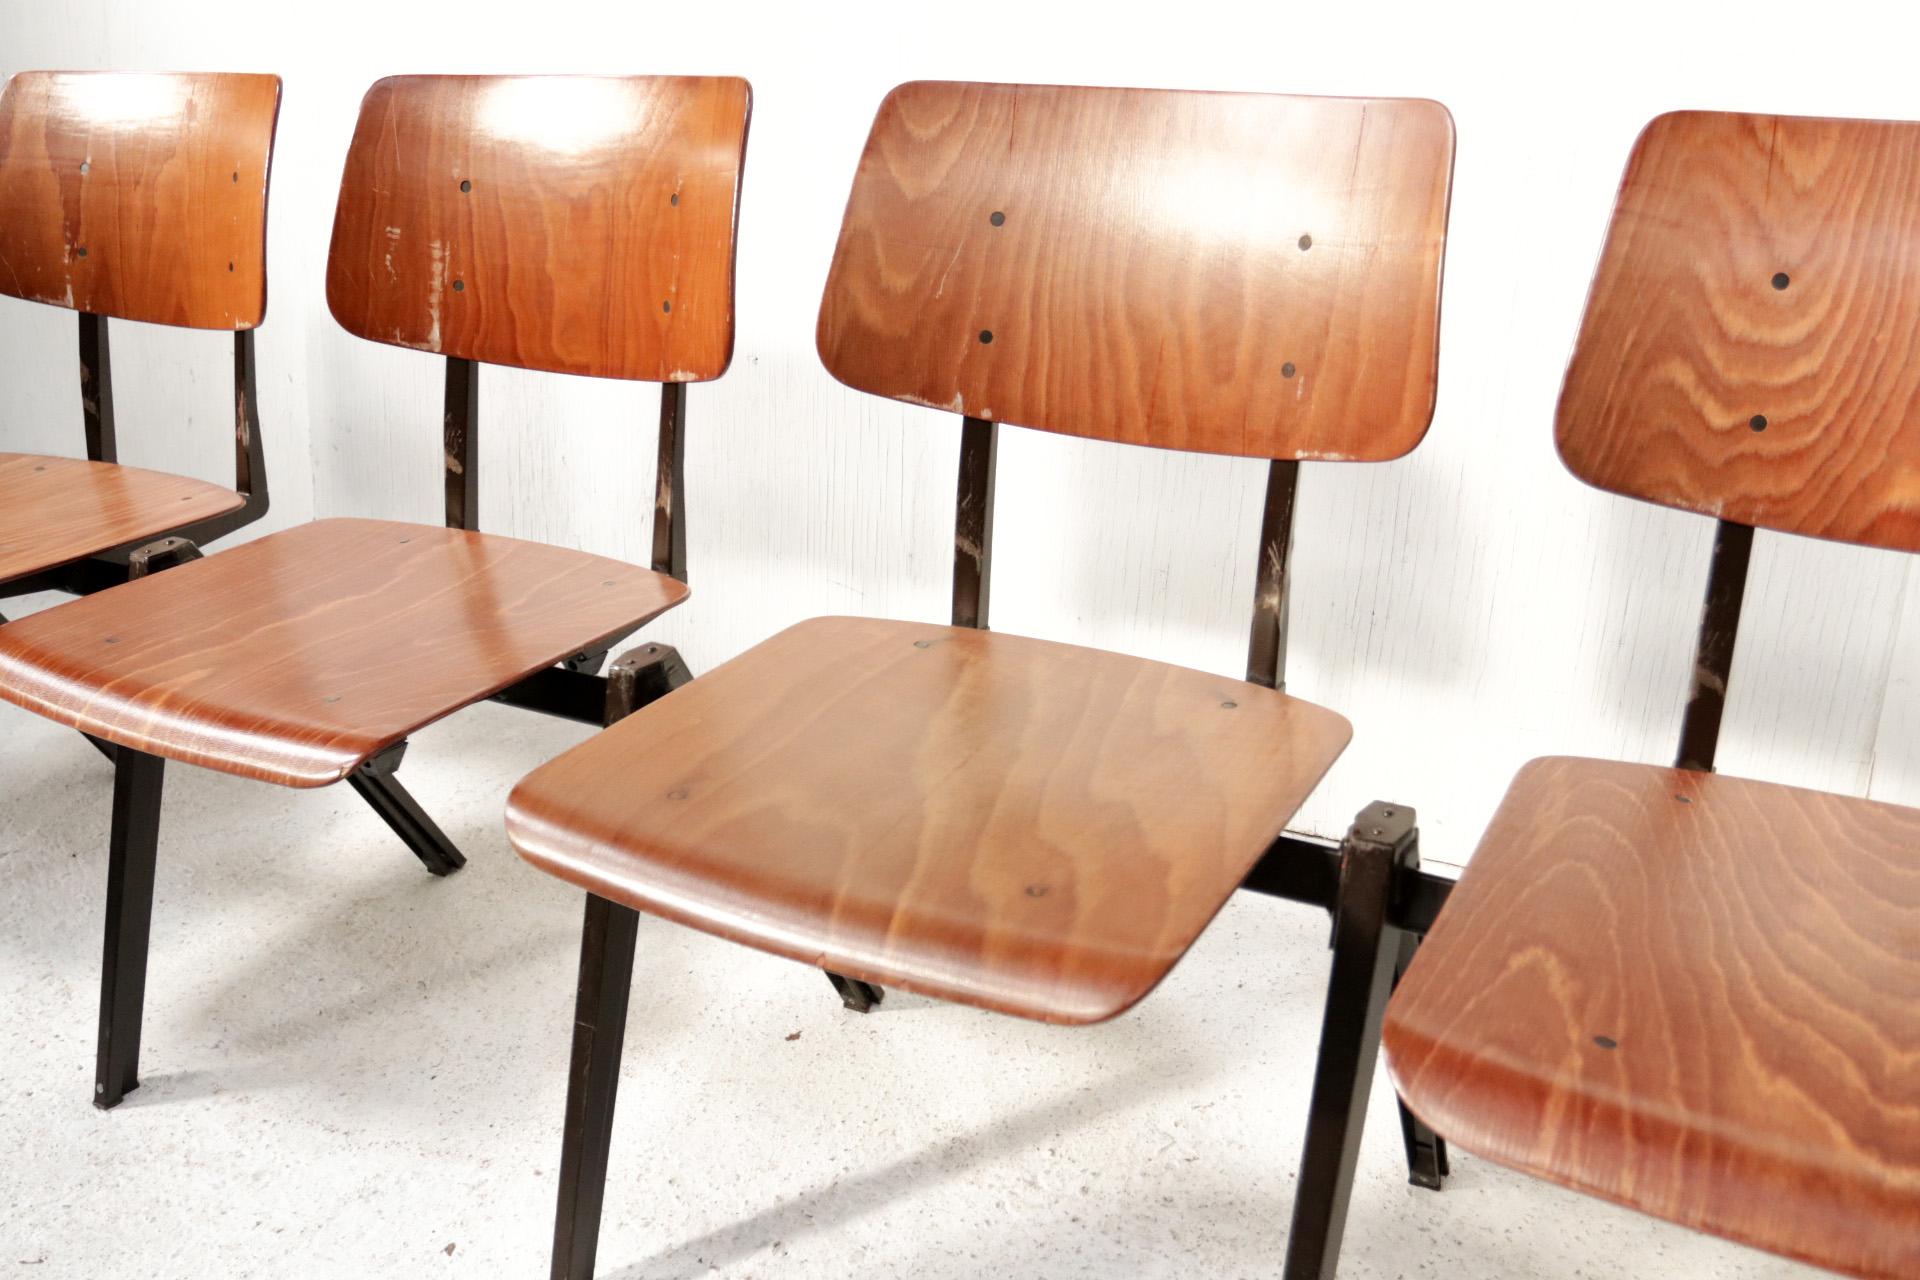 Große Serie von stapelbaren und umschaltbaren Schulstühlen Original S21 von Galvanitas aus den 60er-70er Jahren im Stil der Entwürfe von Friso Kramer, Wim Rietveld und Jean Prouvé.
Wir verkaufen sie in Sätzen von 10 Stück.
Was diese Sitze so